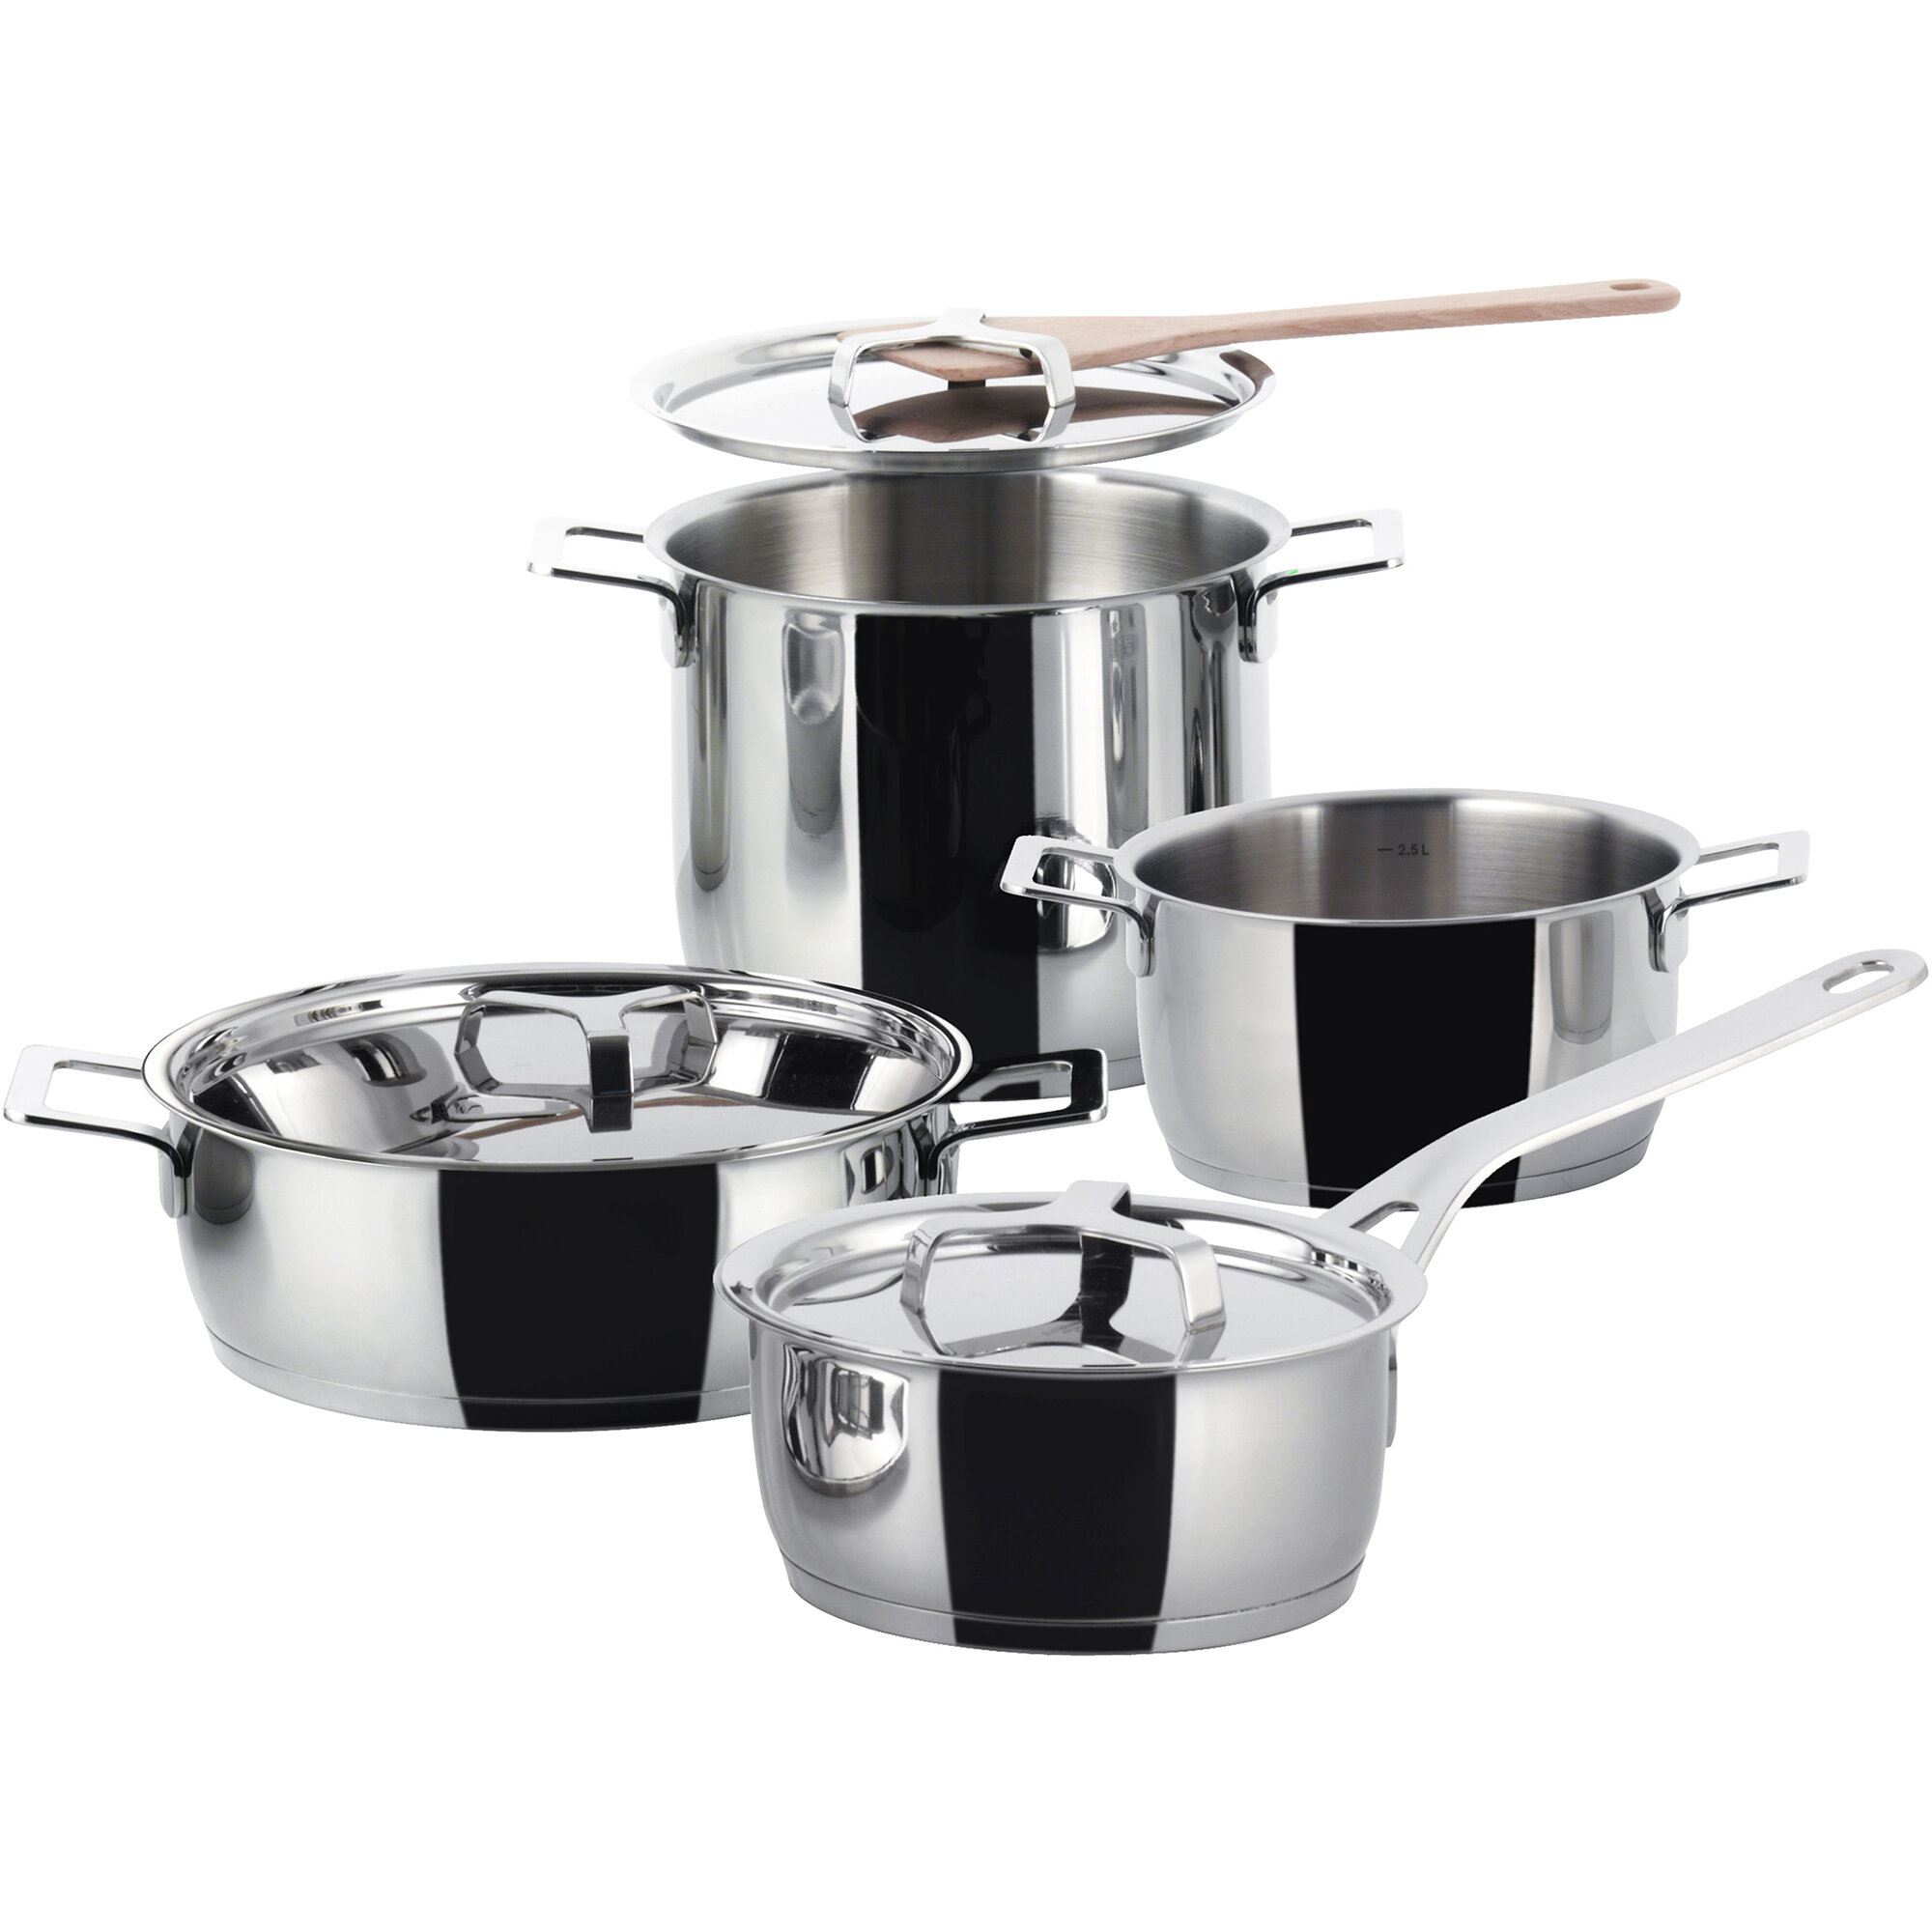 https://assets.wfcdn.com/im/82793858/compr-r85/8362/83624104/pots-pans-7-piece-stainless-steel-cookware-set.jpg